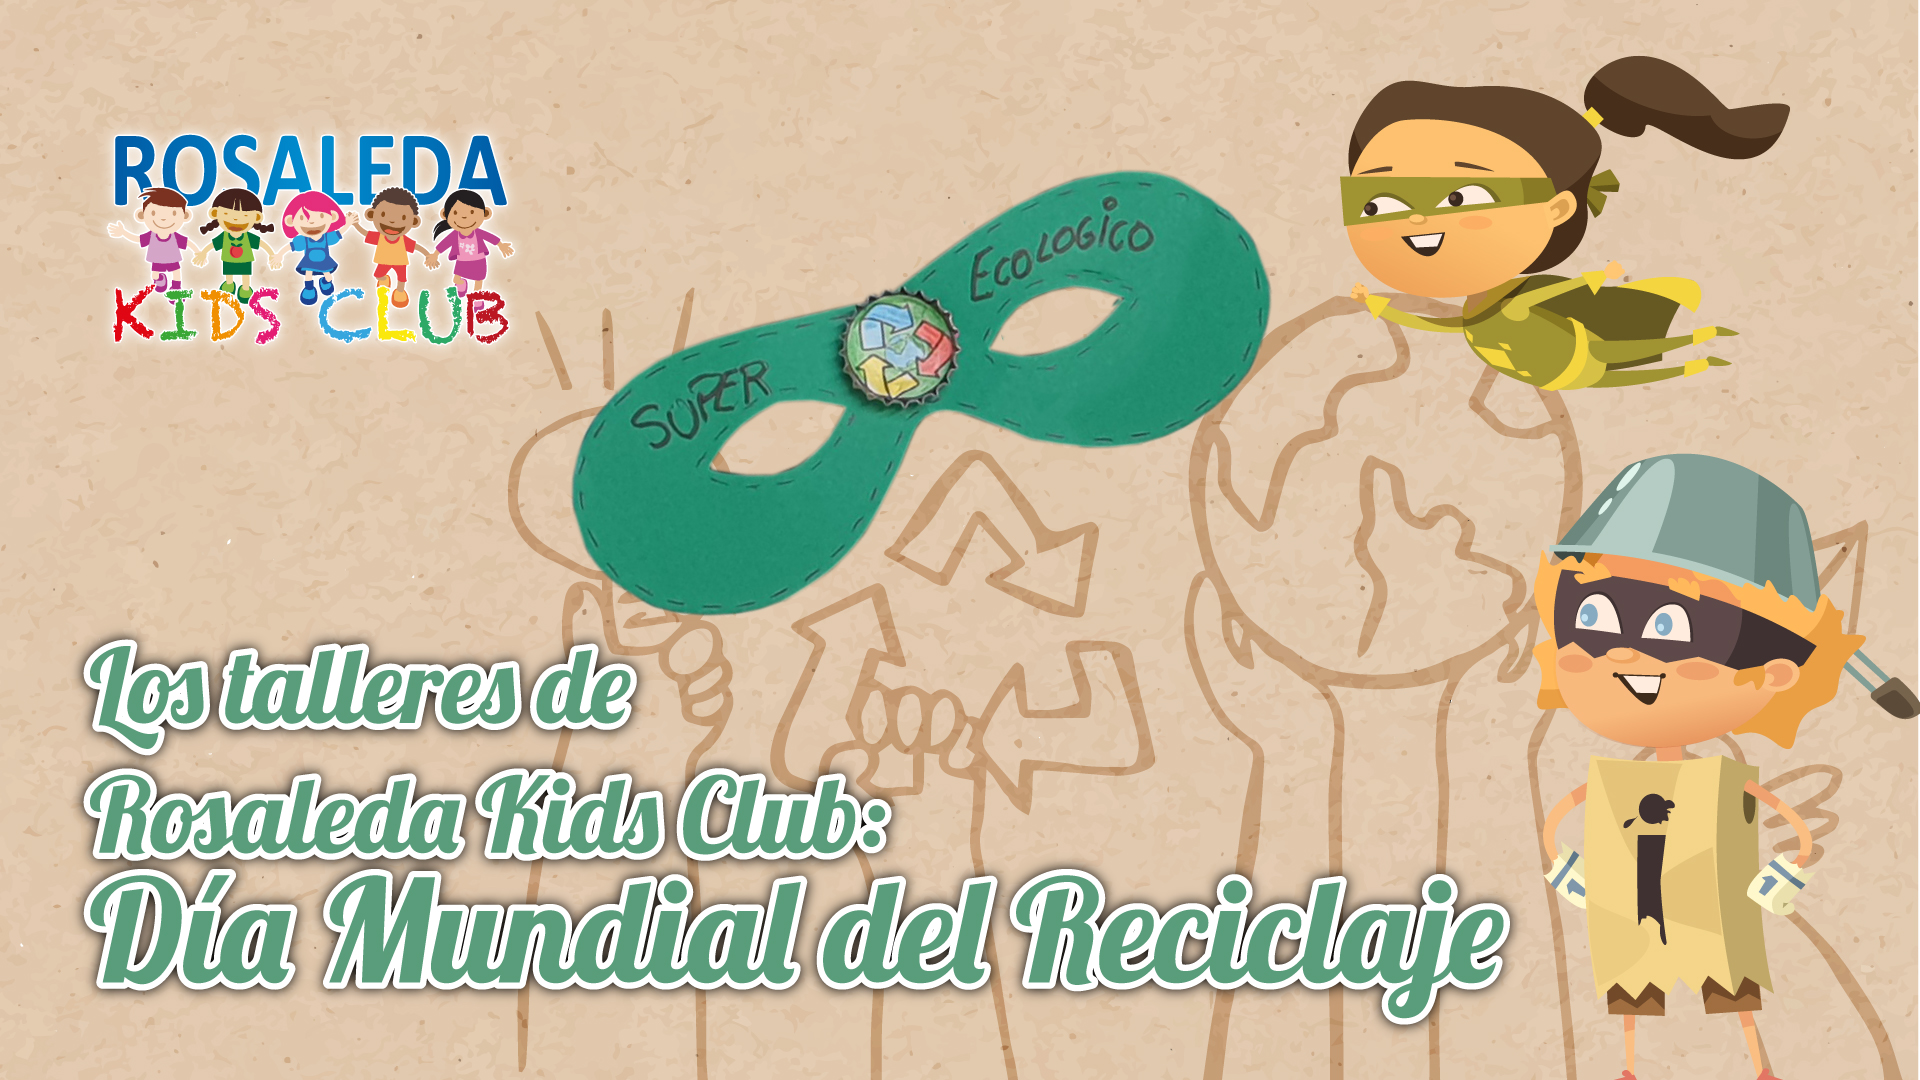 Los talleres de la Rosaleda Kids Club: Día Mundial del Reciclaje